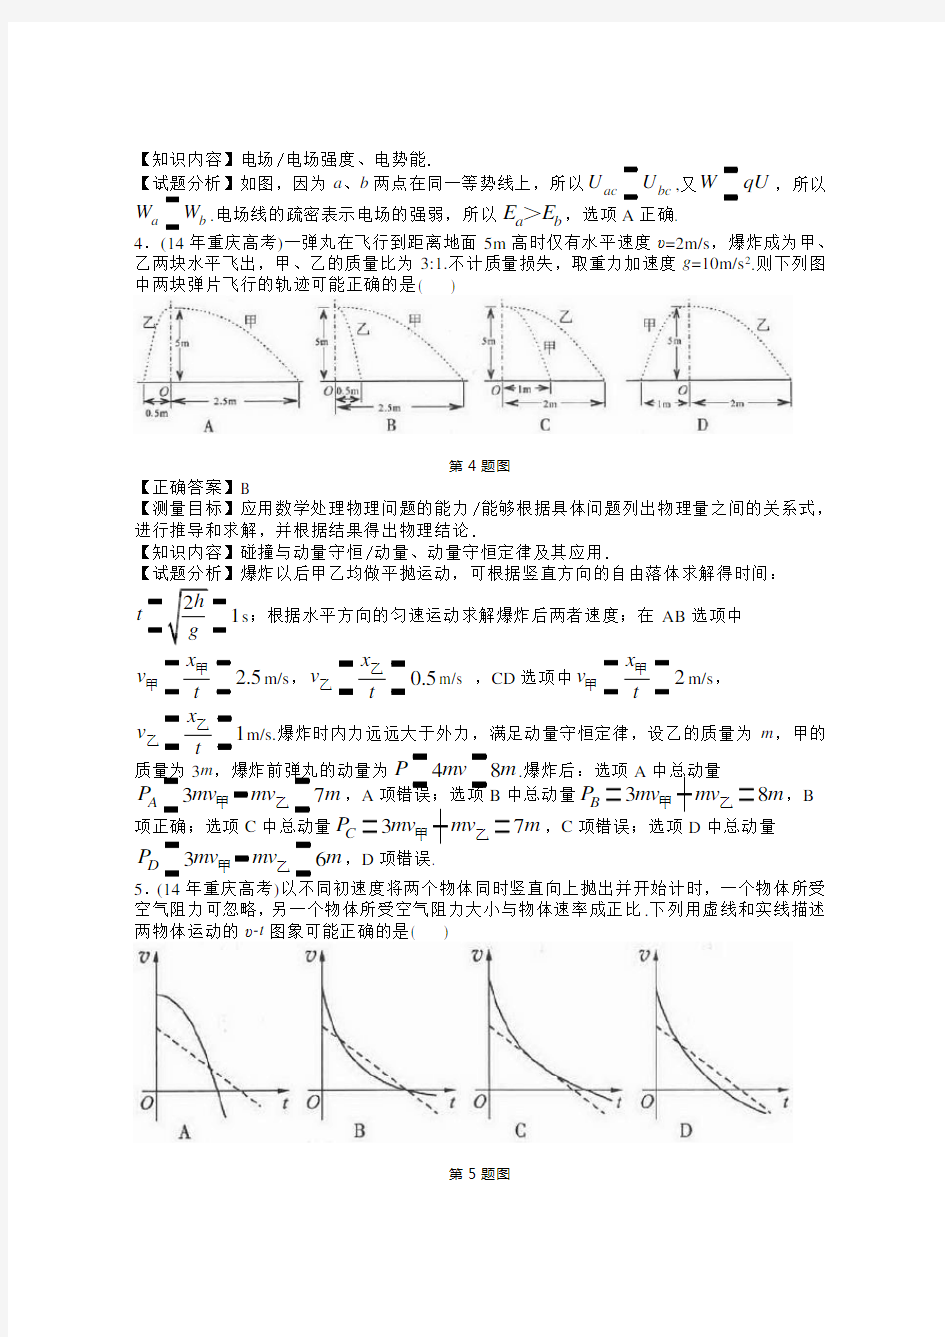 2014年重庆高考物理试题答案详细解析版(全)